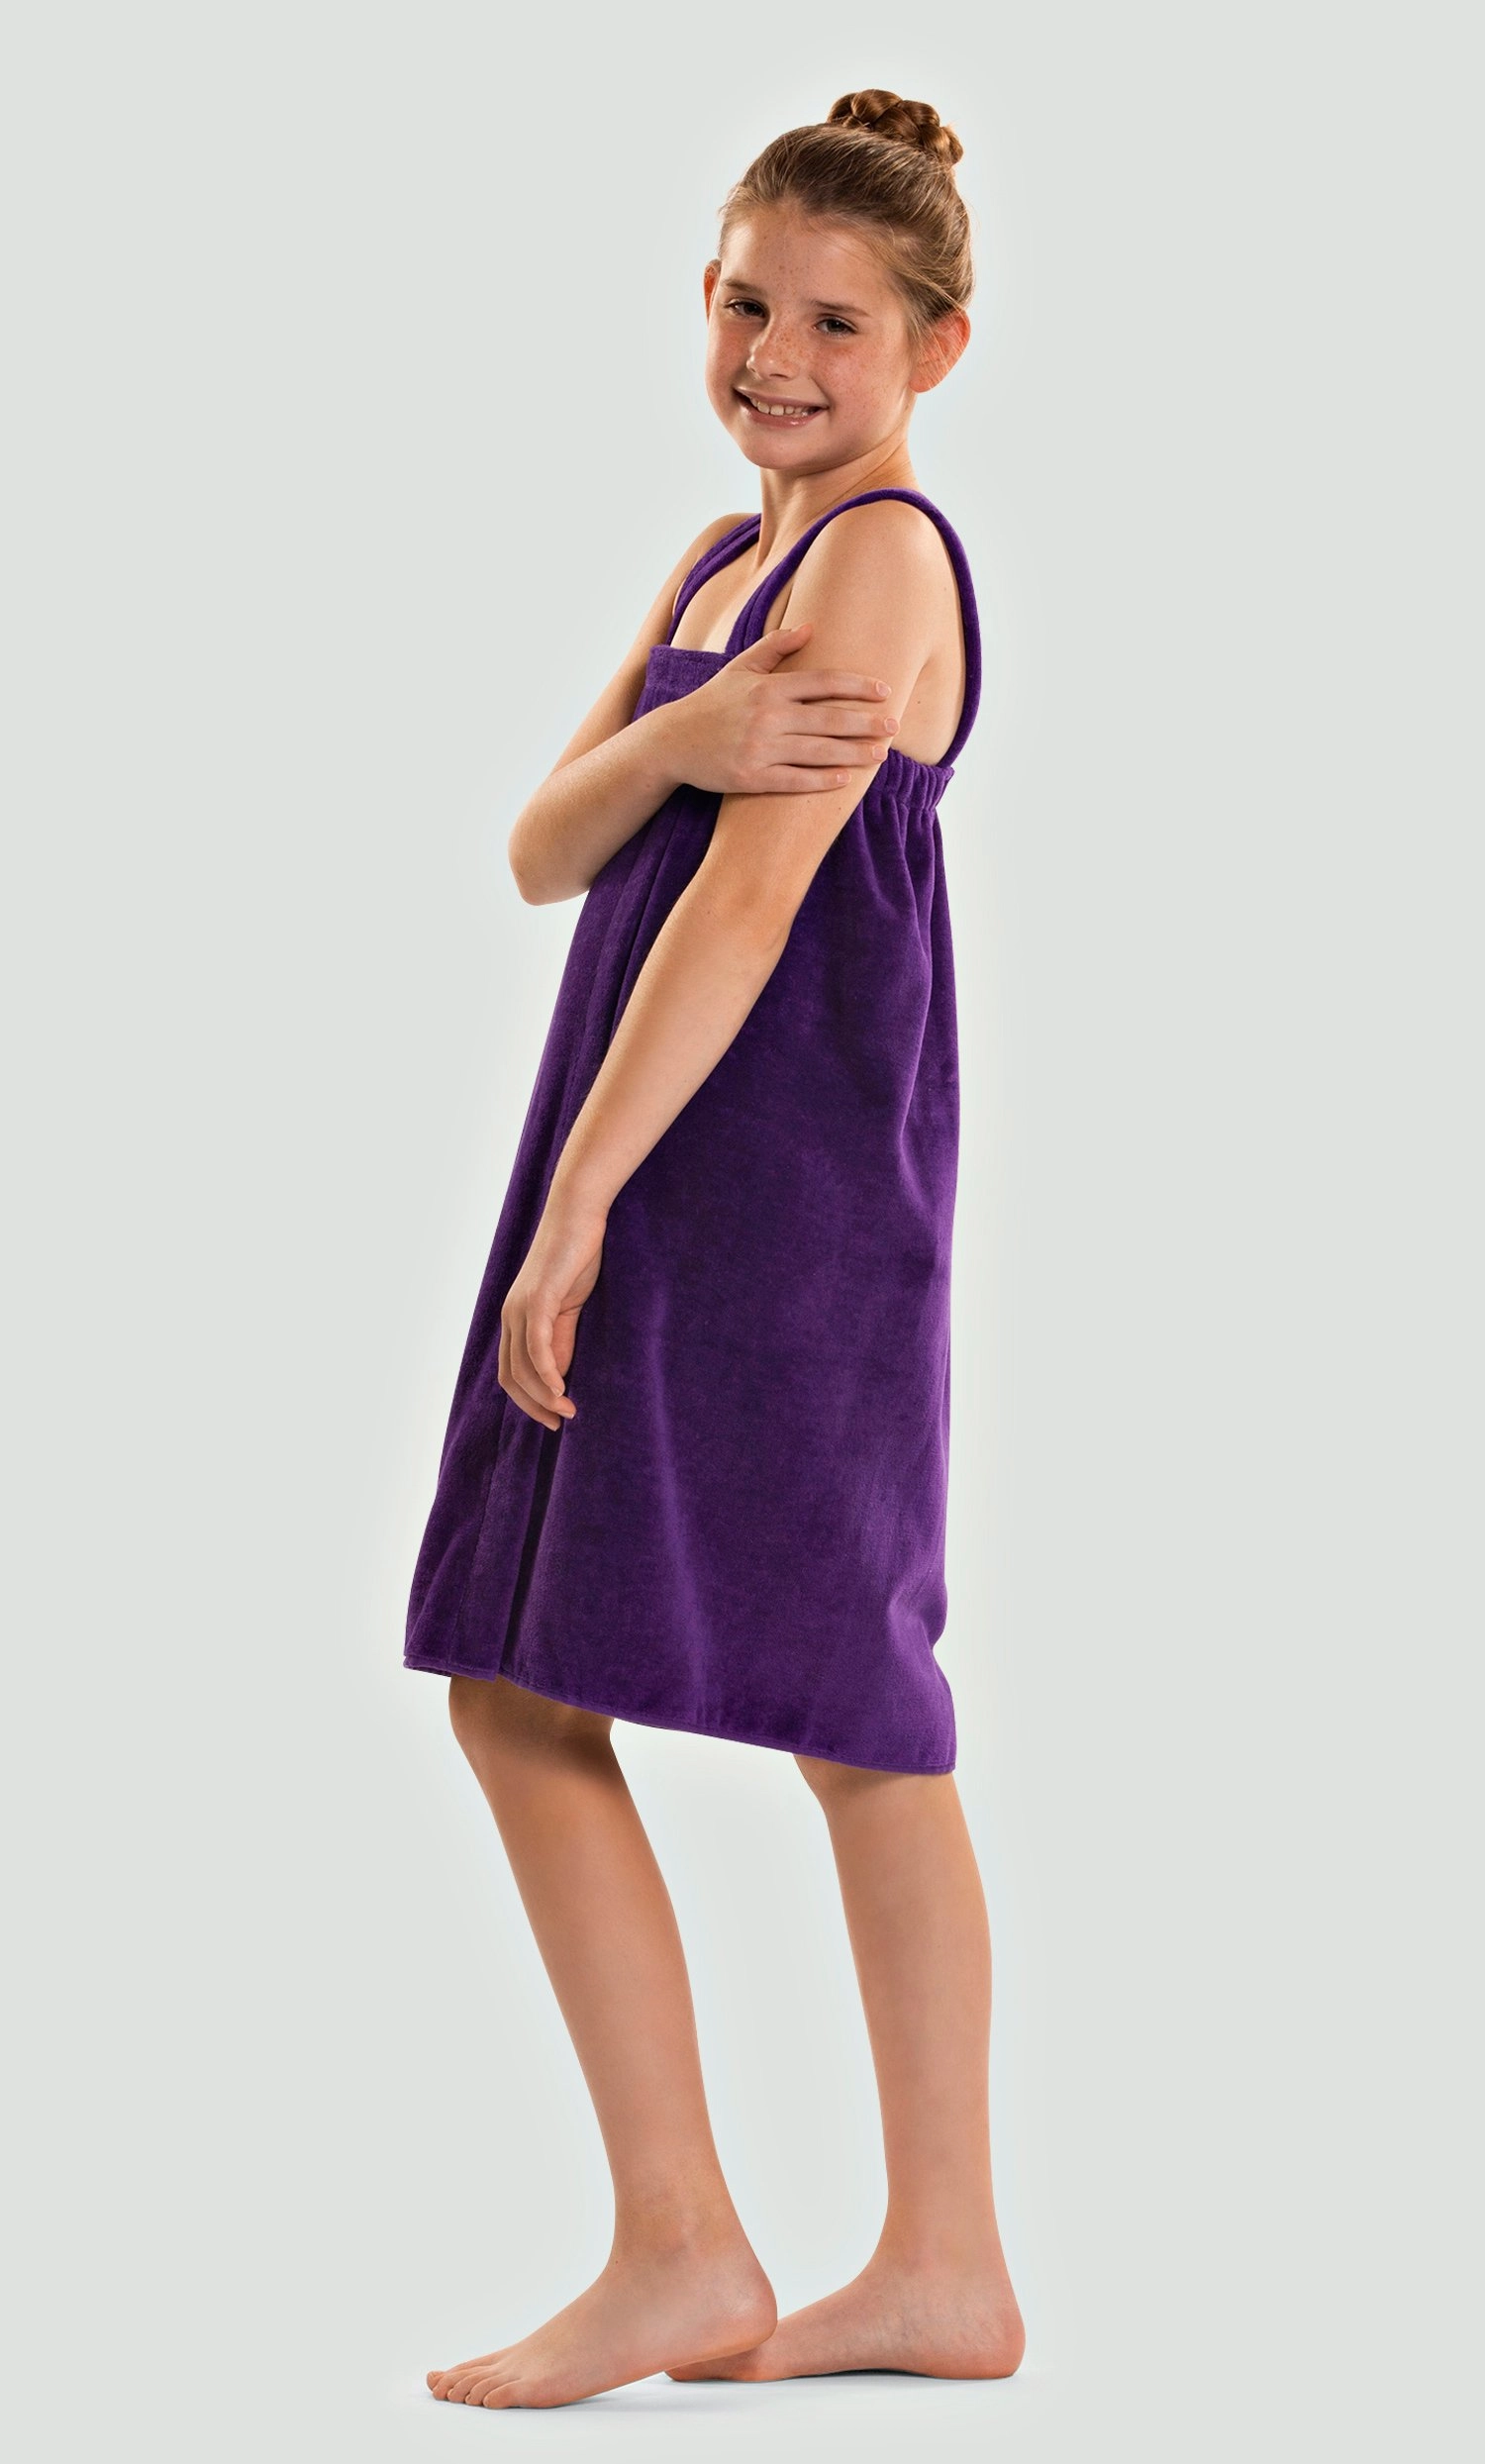 Velcro Wraps :: 100% Cotton Men Terry Velour Cloth Body Wrap, Bath Towel  Wrap - Turquaz Linen, Towels, Robes, Linen and More!